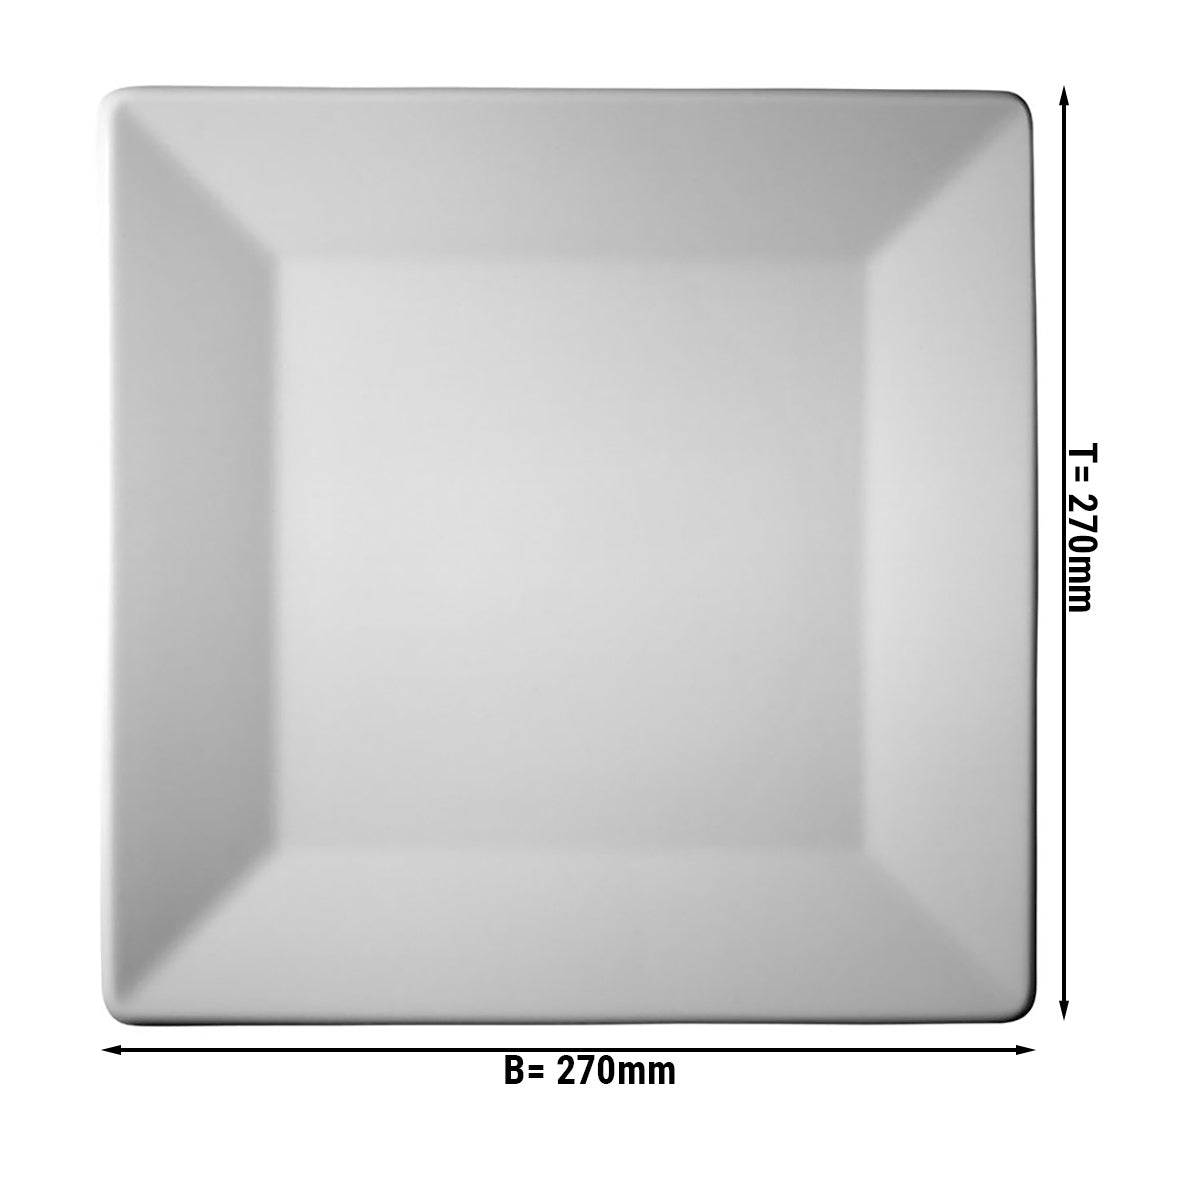 (24 stk.) MAYA - Plade flad og firkantet - 27 x 27 cm